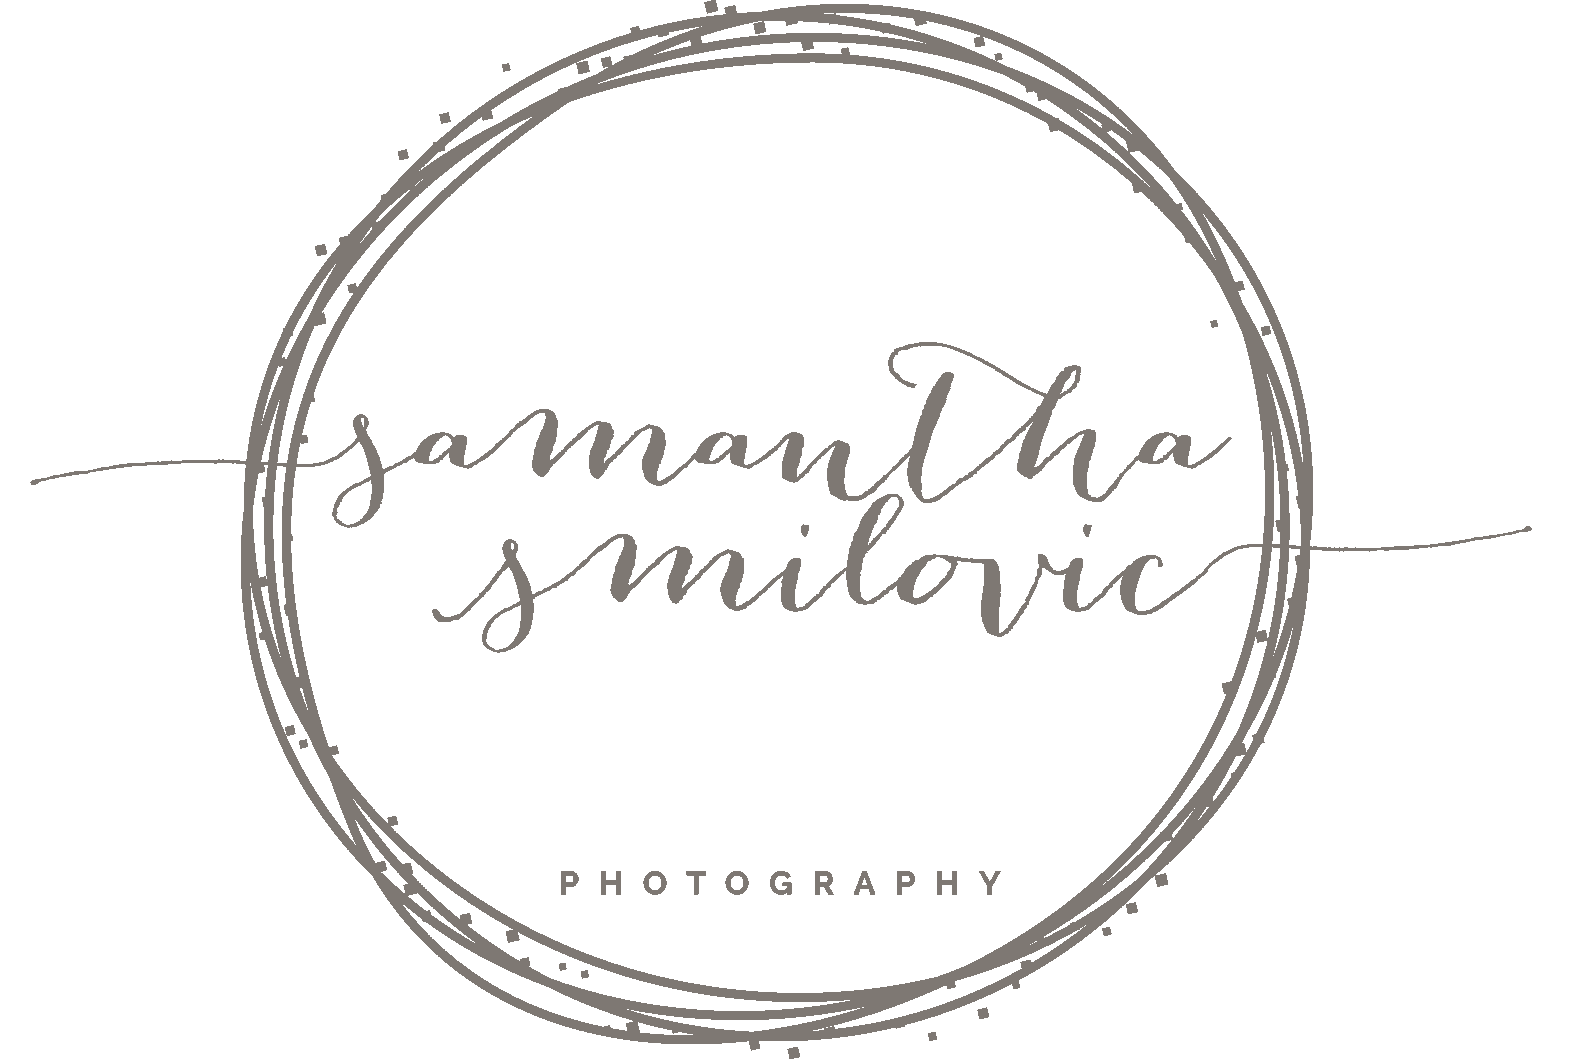 Samantha Smilovic